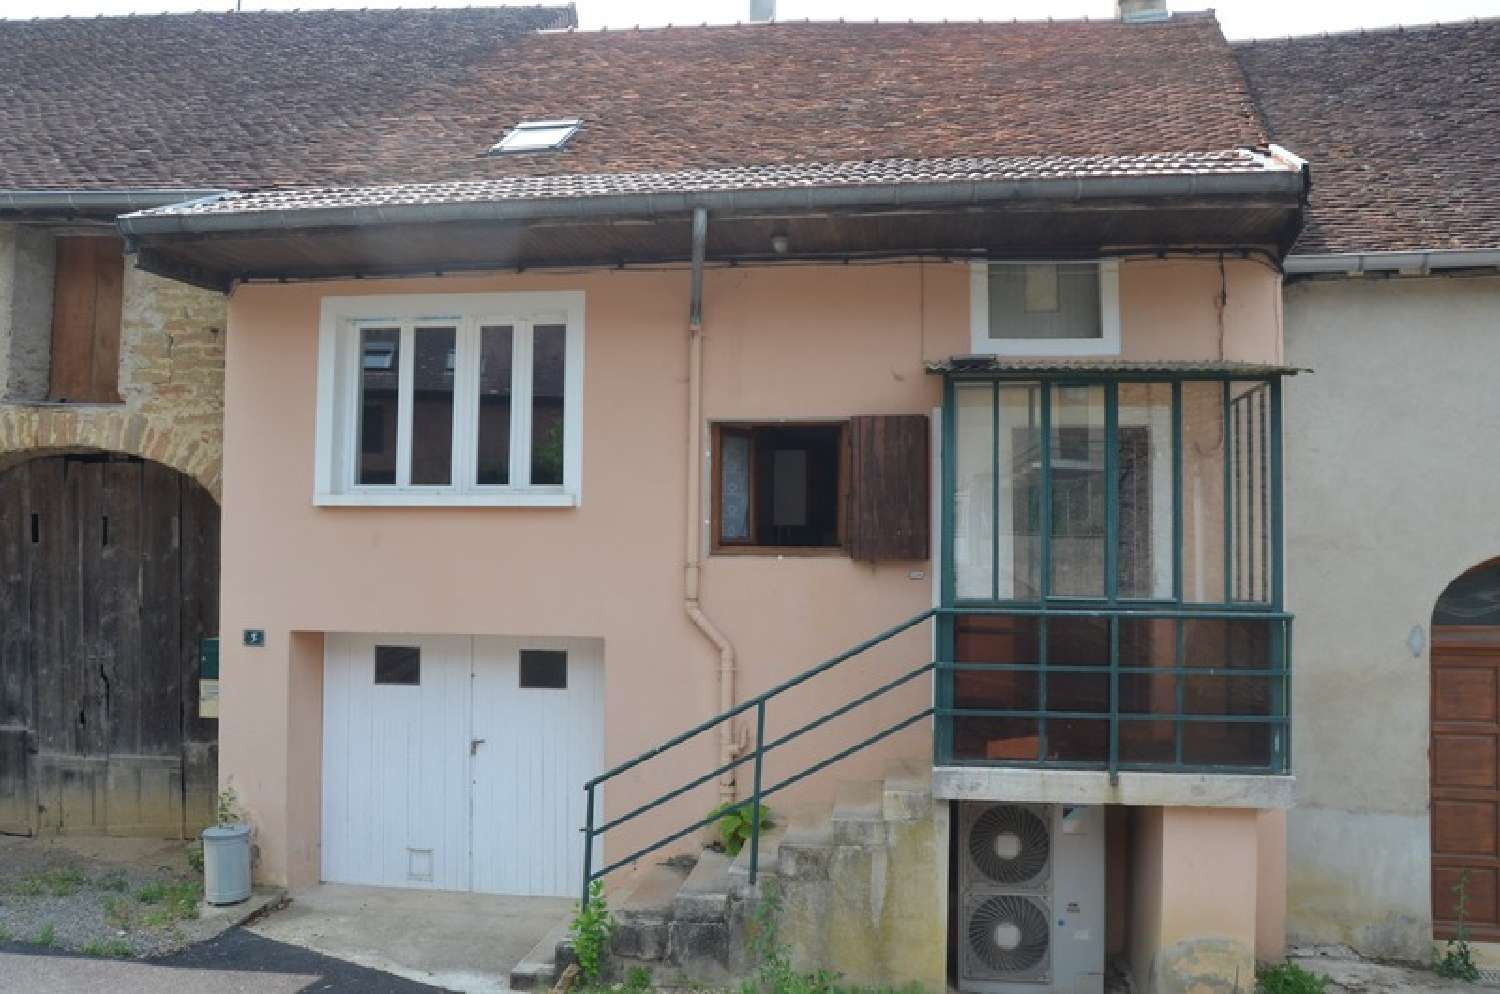  à vendre maison de village Lons-le-Saunier Jura 1